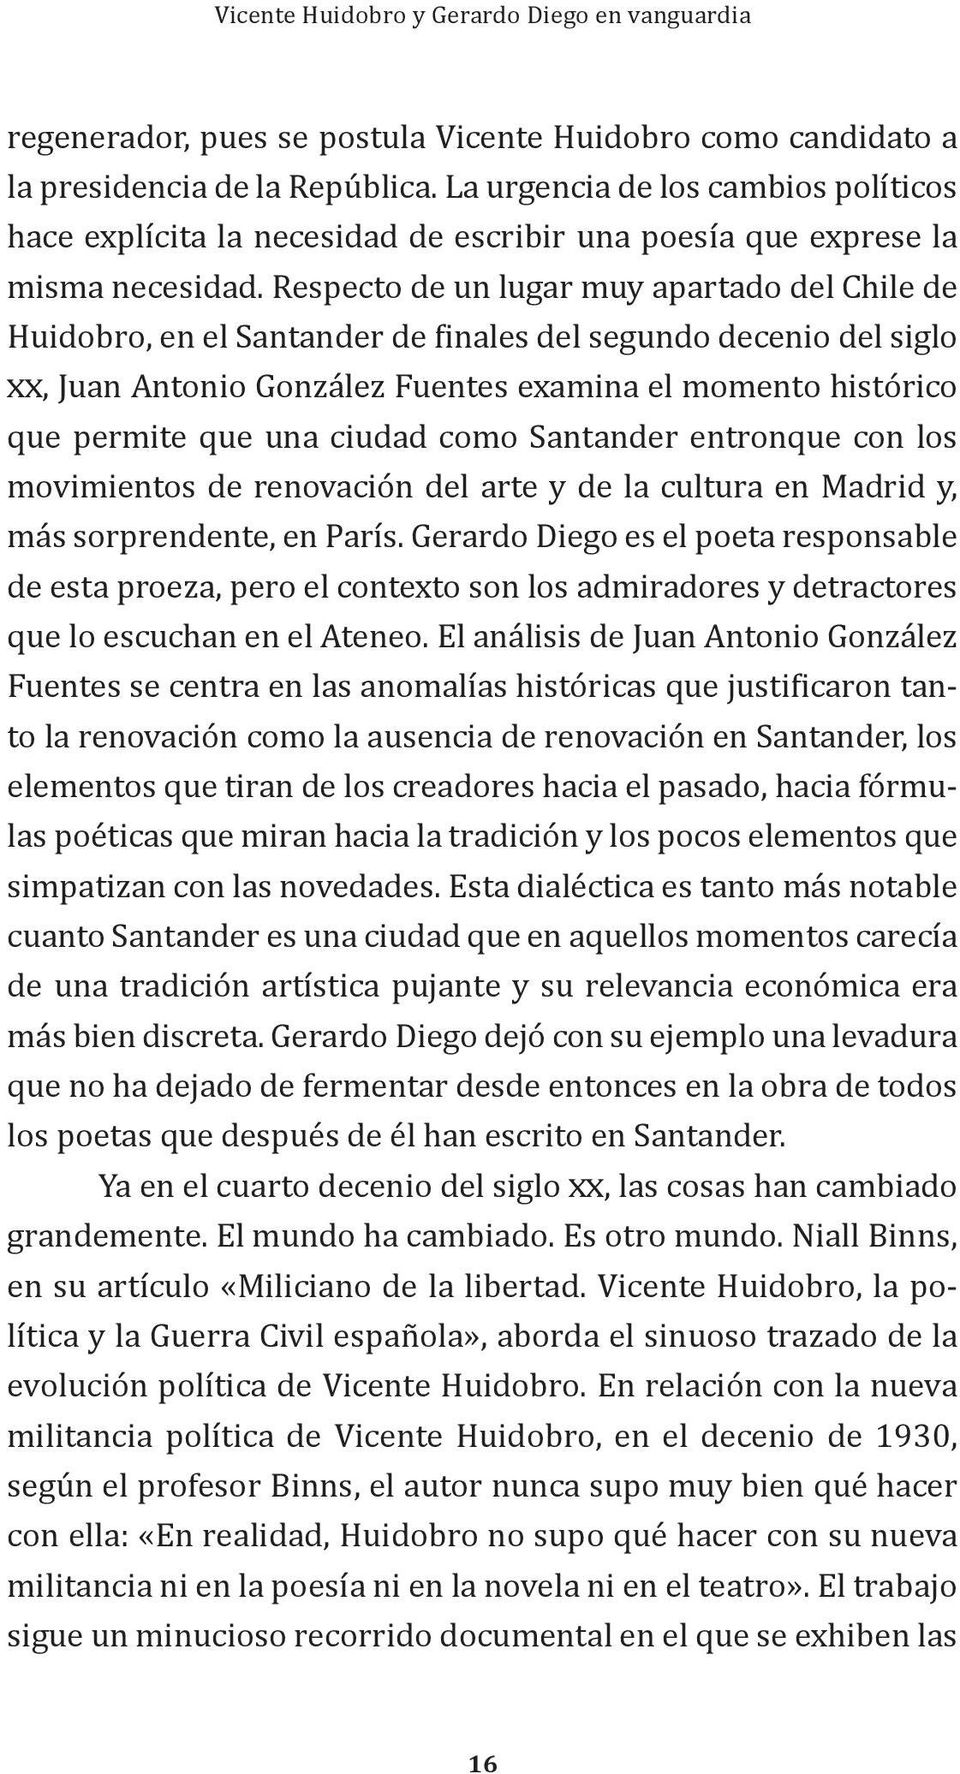 Respecto de un lugar muy apartado del Chile de Huidobro, en el Santander de finales del segundo decenio del siglo xx, Juan Antonio González Fuentes examina el momento histórico que permite que una